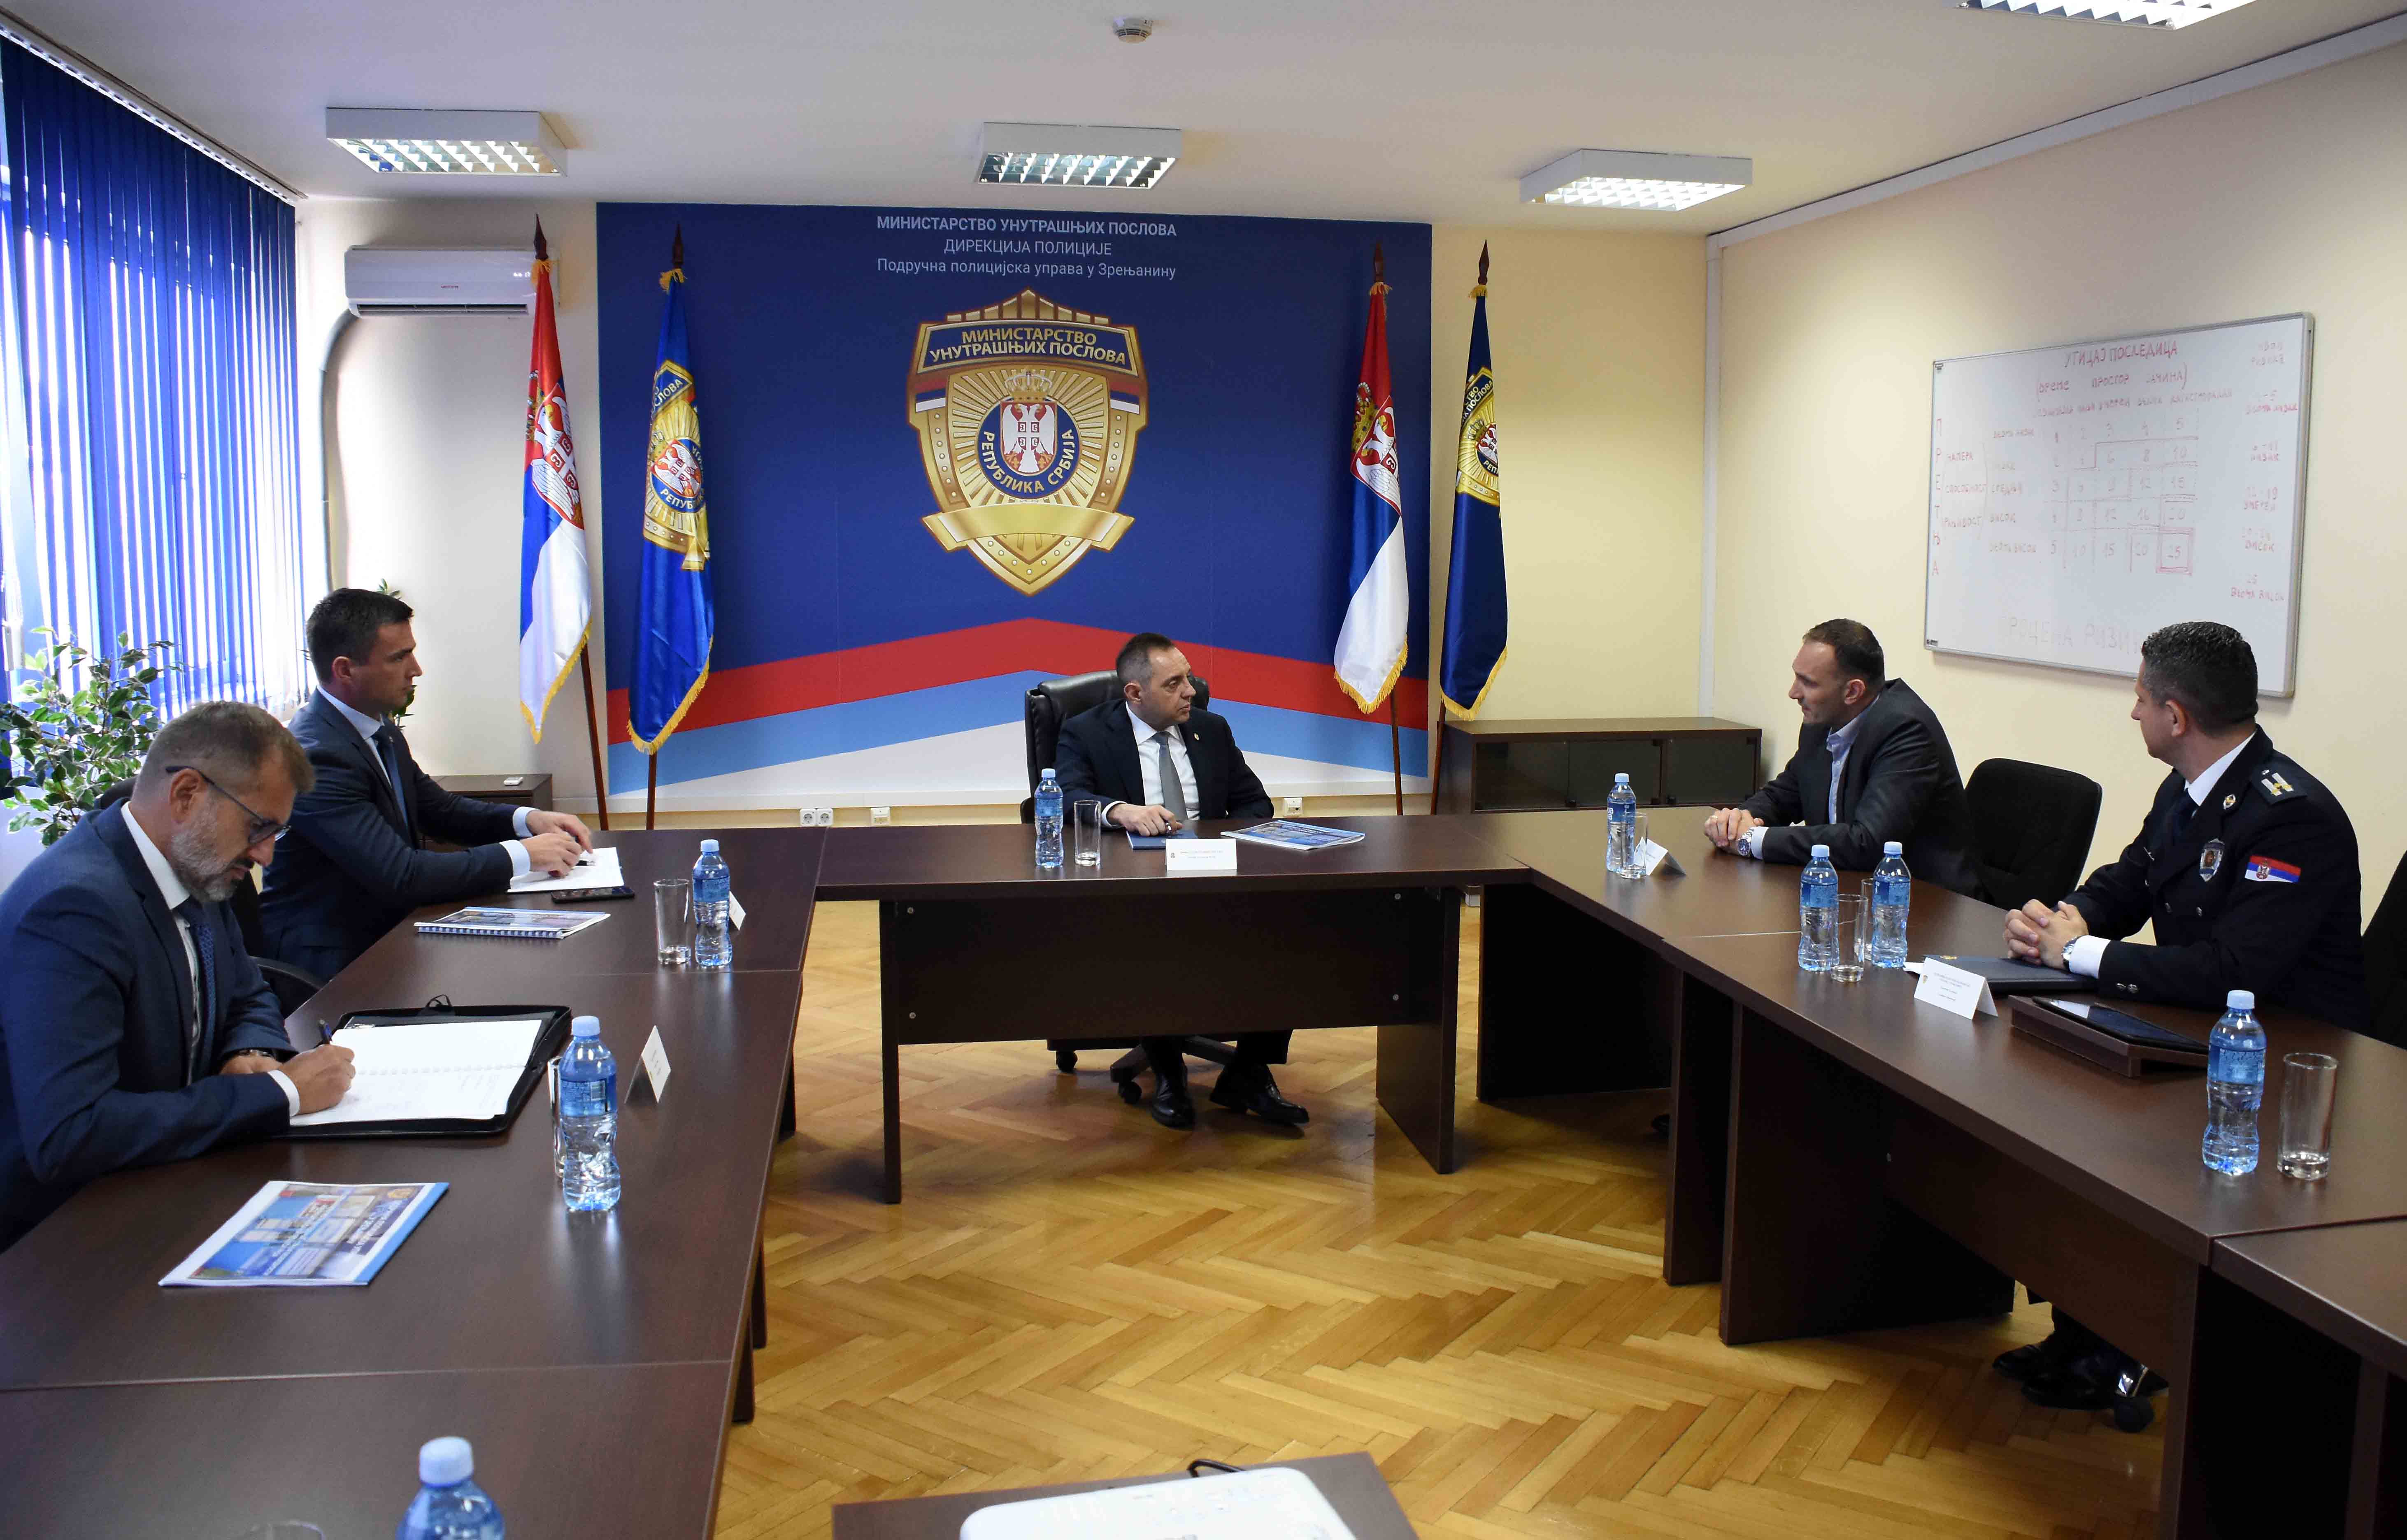 Министар Вулин: Безбедне и мирне улице циљ и полиције и локалне самоуправе